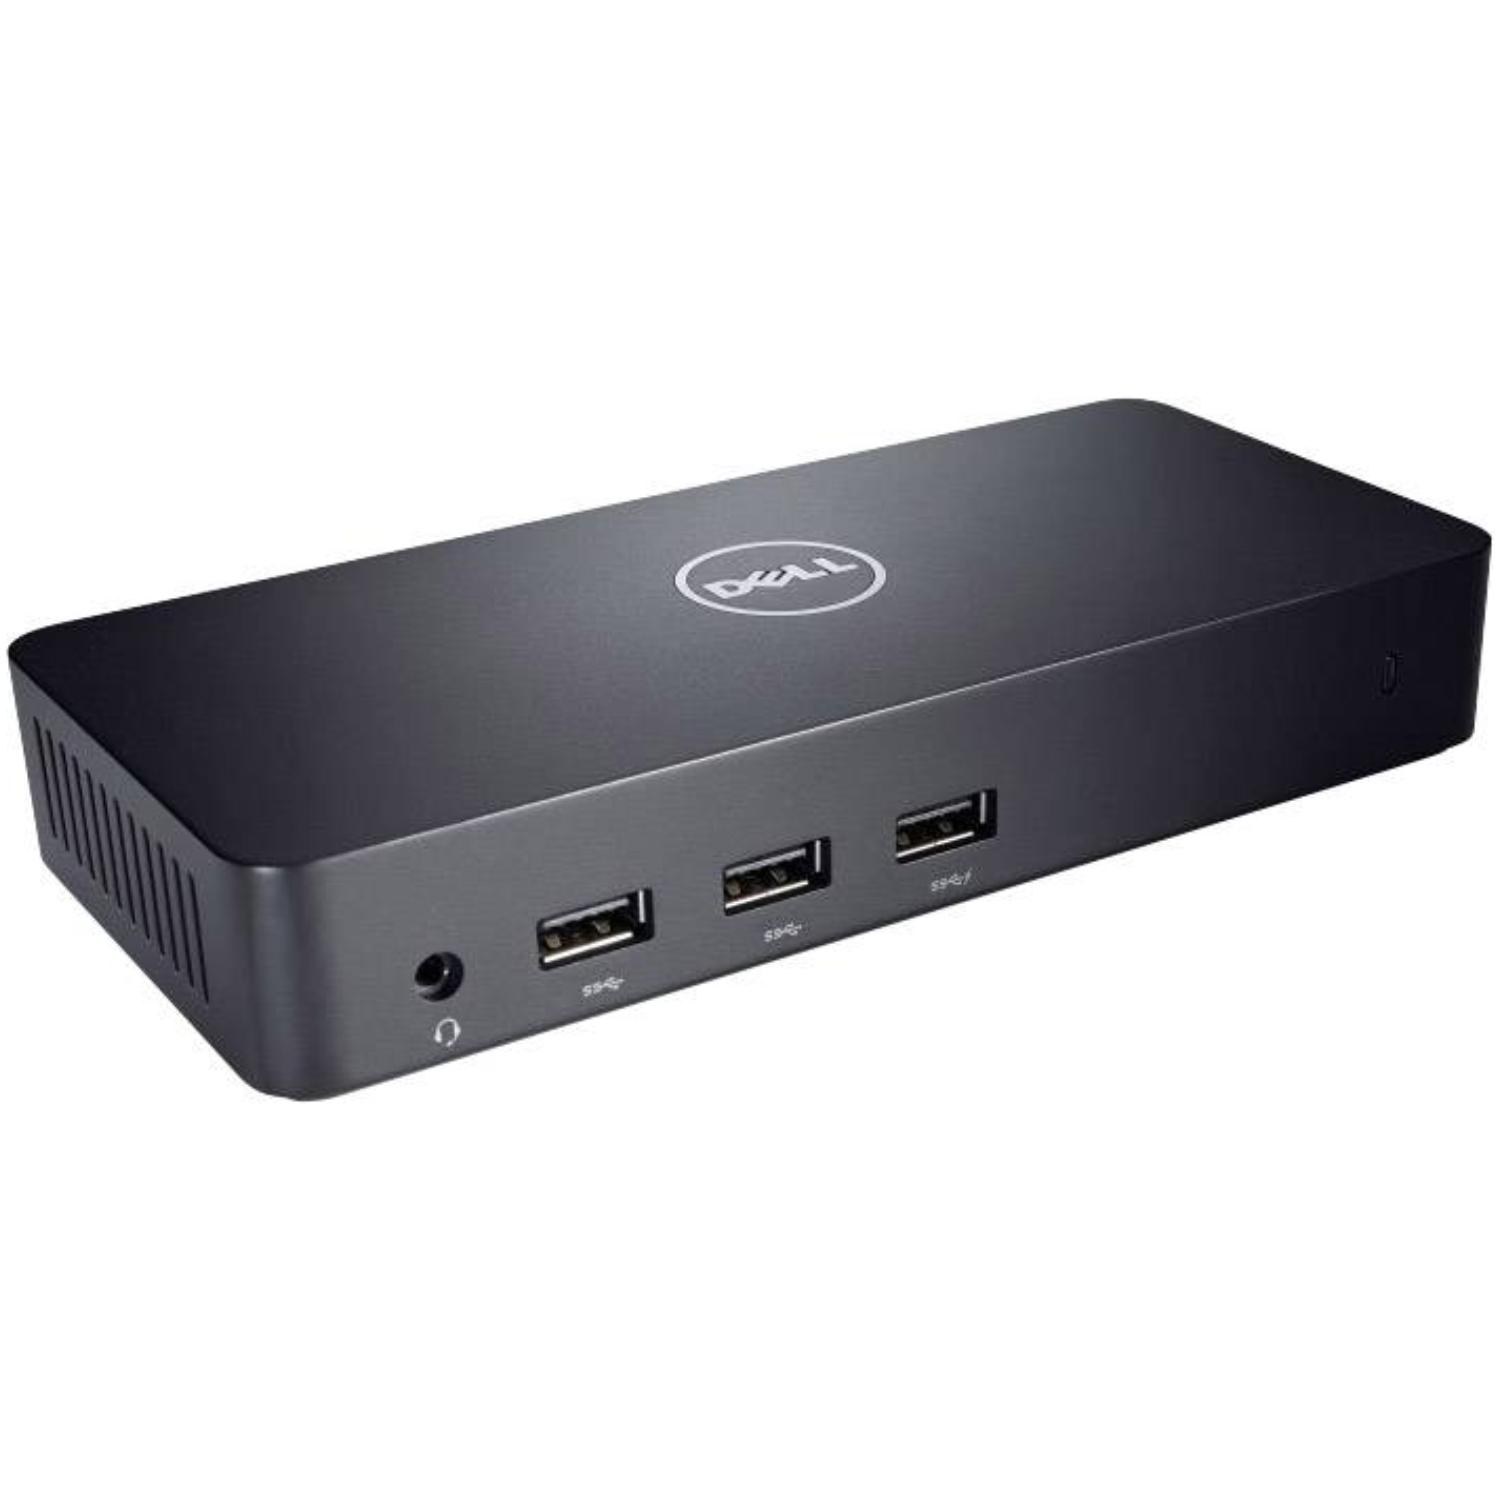 USB 3.0 multiport adapter - Dell